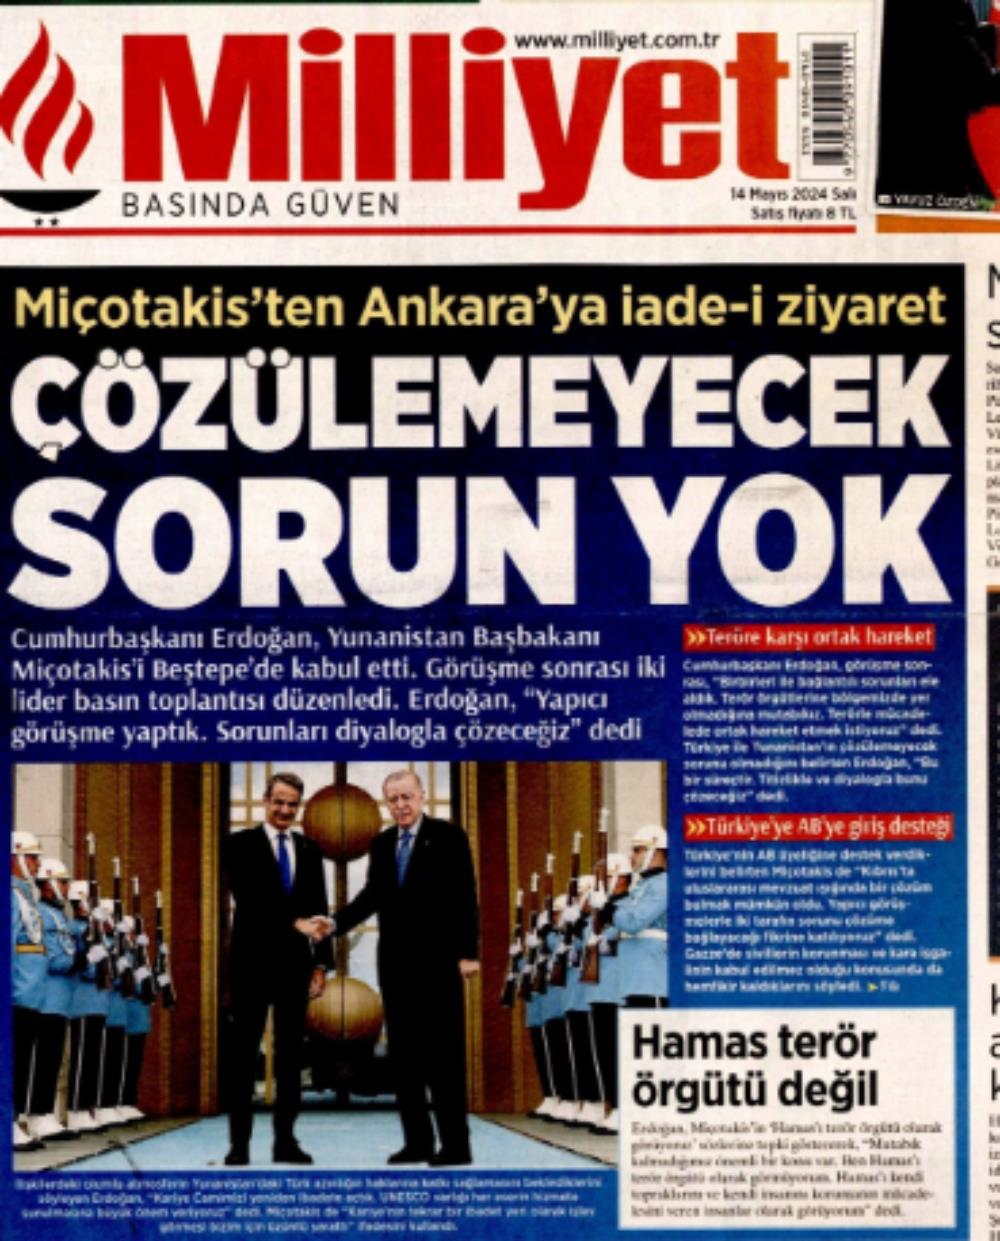 Μητσοτάκης - Ερντογάν - Συνάντηση - Πρωτοσέλιδα τουρκικών εφημερίδων